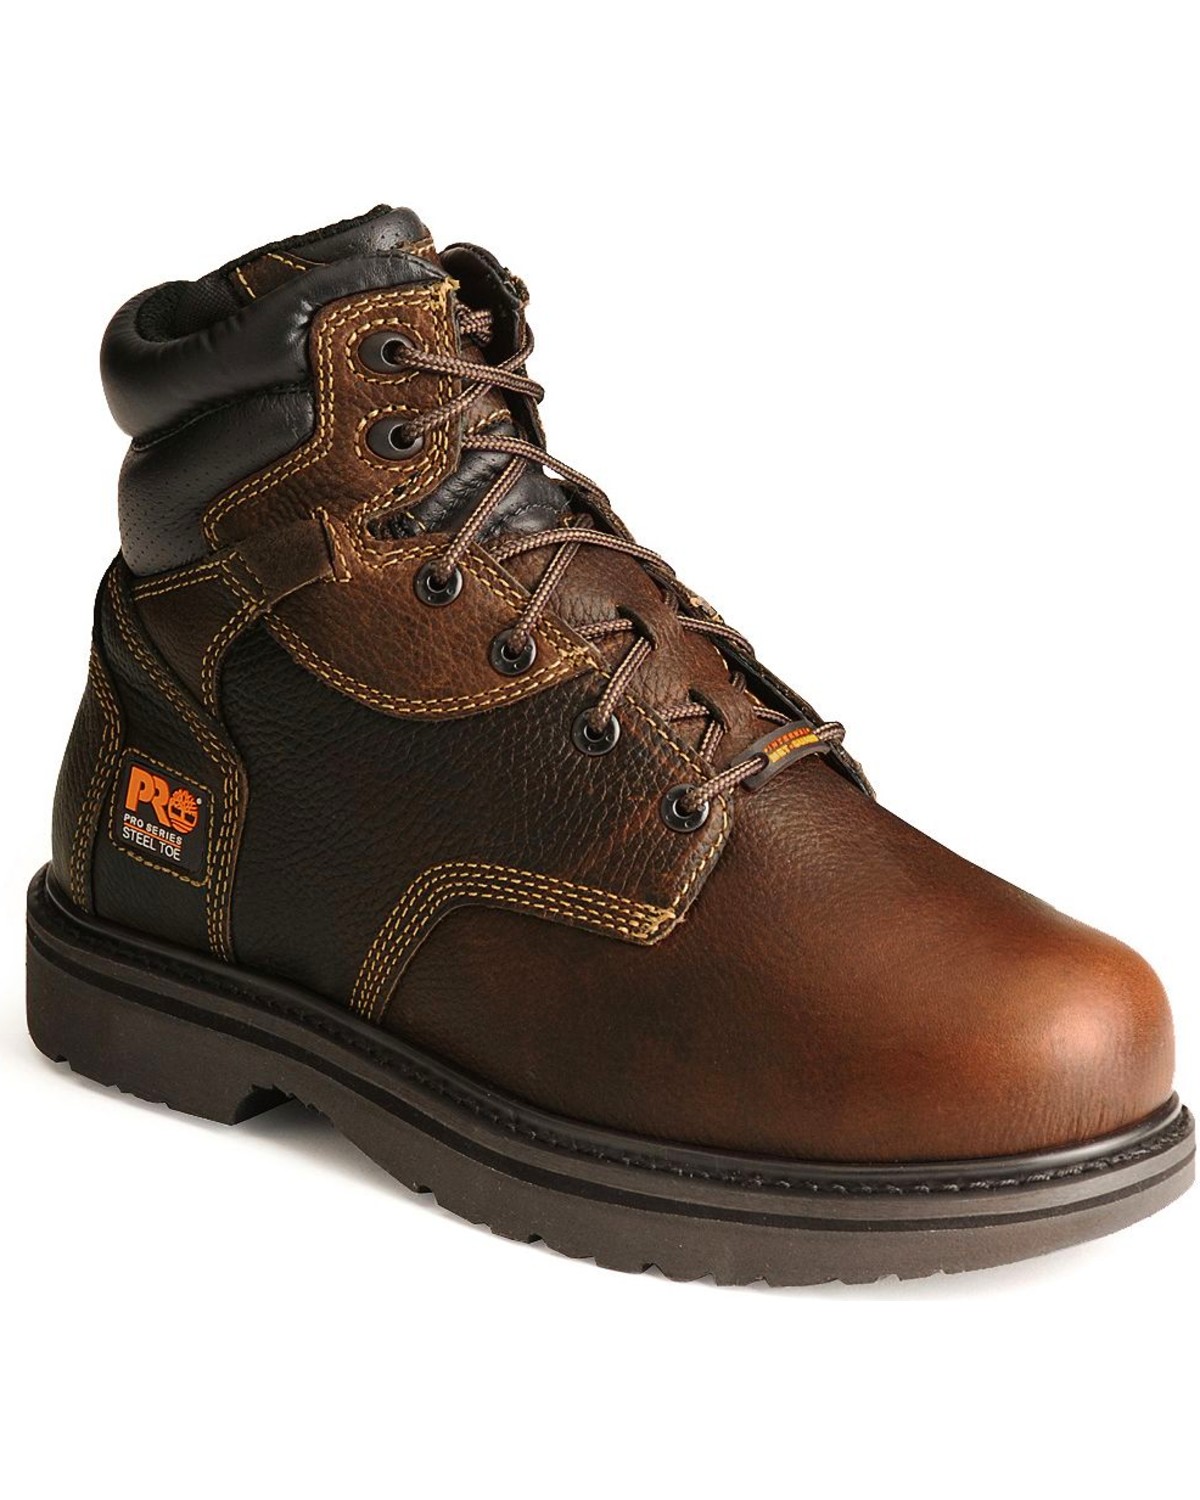 Timberland Pro Men's 6" Internal Met Guard Work Boots - Steel Toe